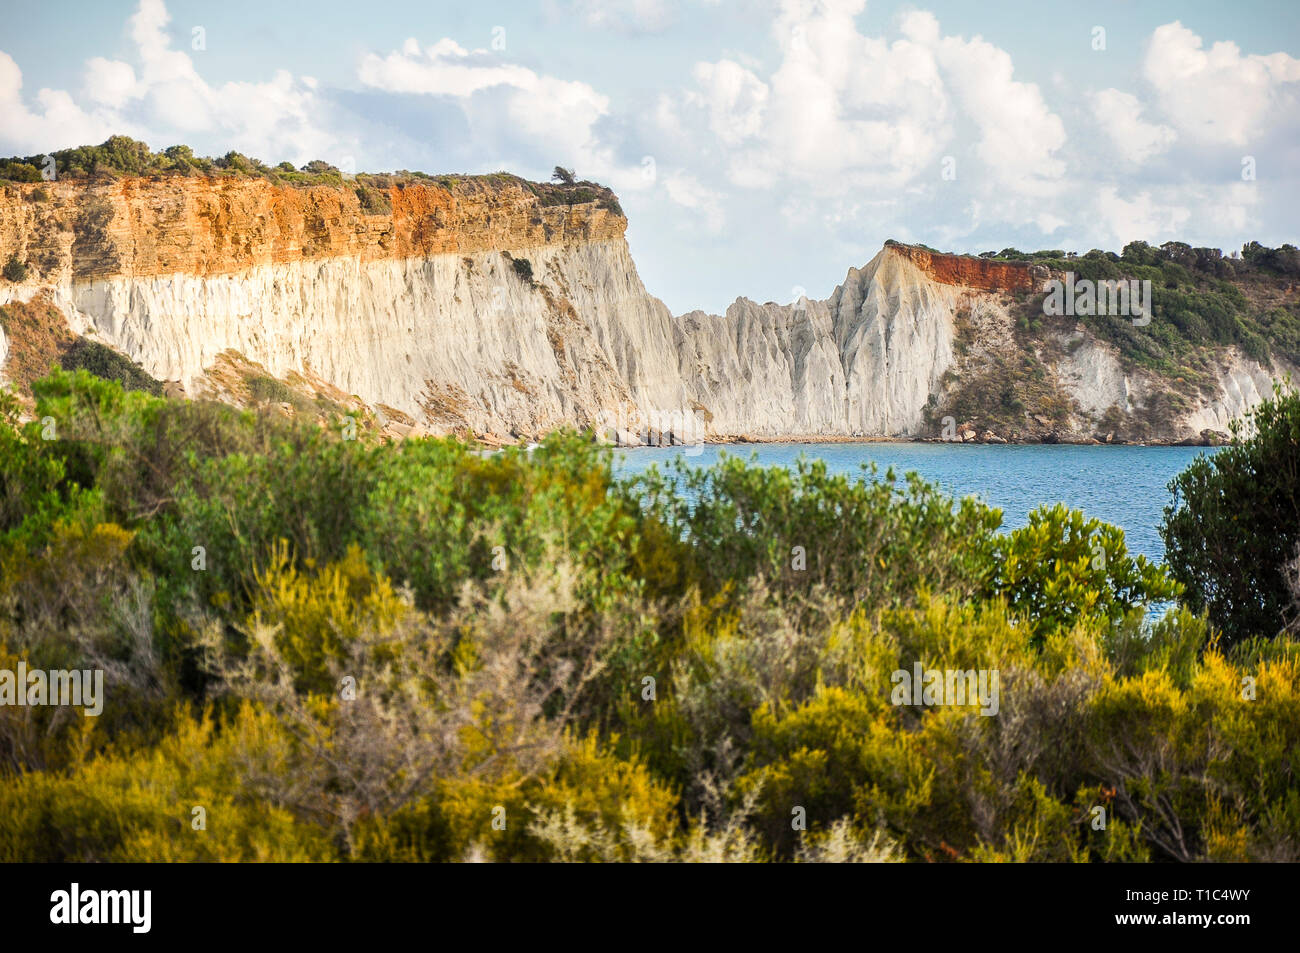 Eine tolle Aussicht aus einer Entfernung auf einen großen Felswand. Bunte Landschaft der schönen mediterranen Natur, mit grünen Bäumen und dem blauen Meer. Stockfoto